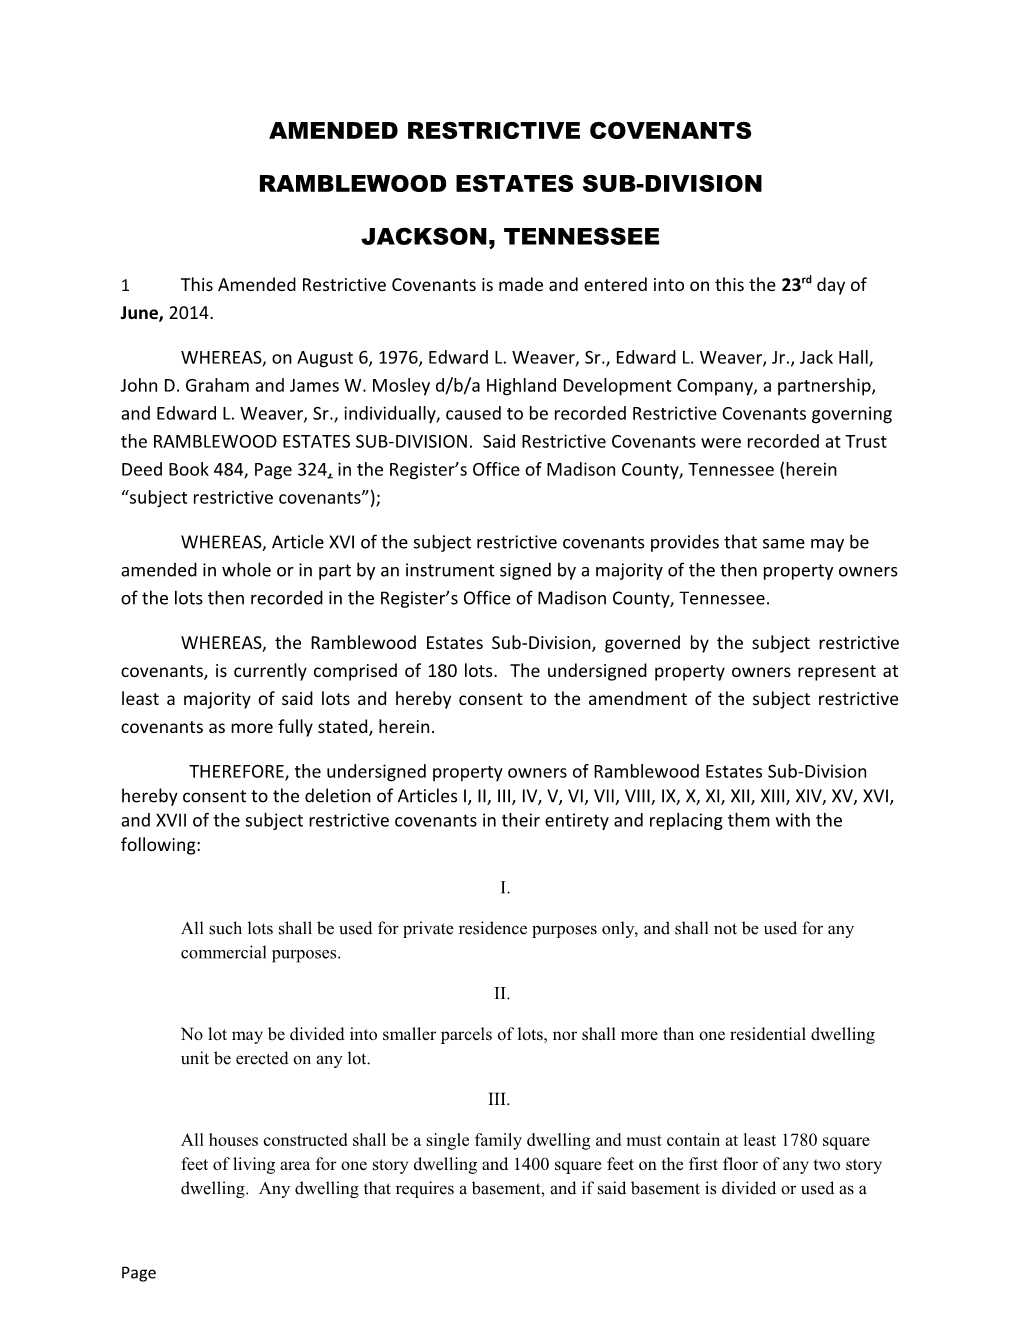 Ramblewood Estates Sub-Division